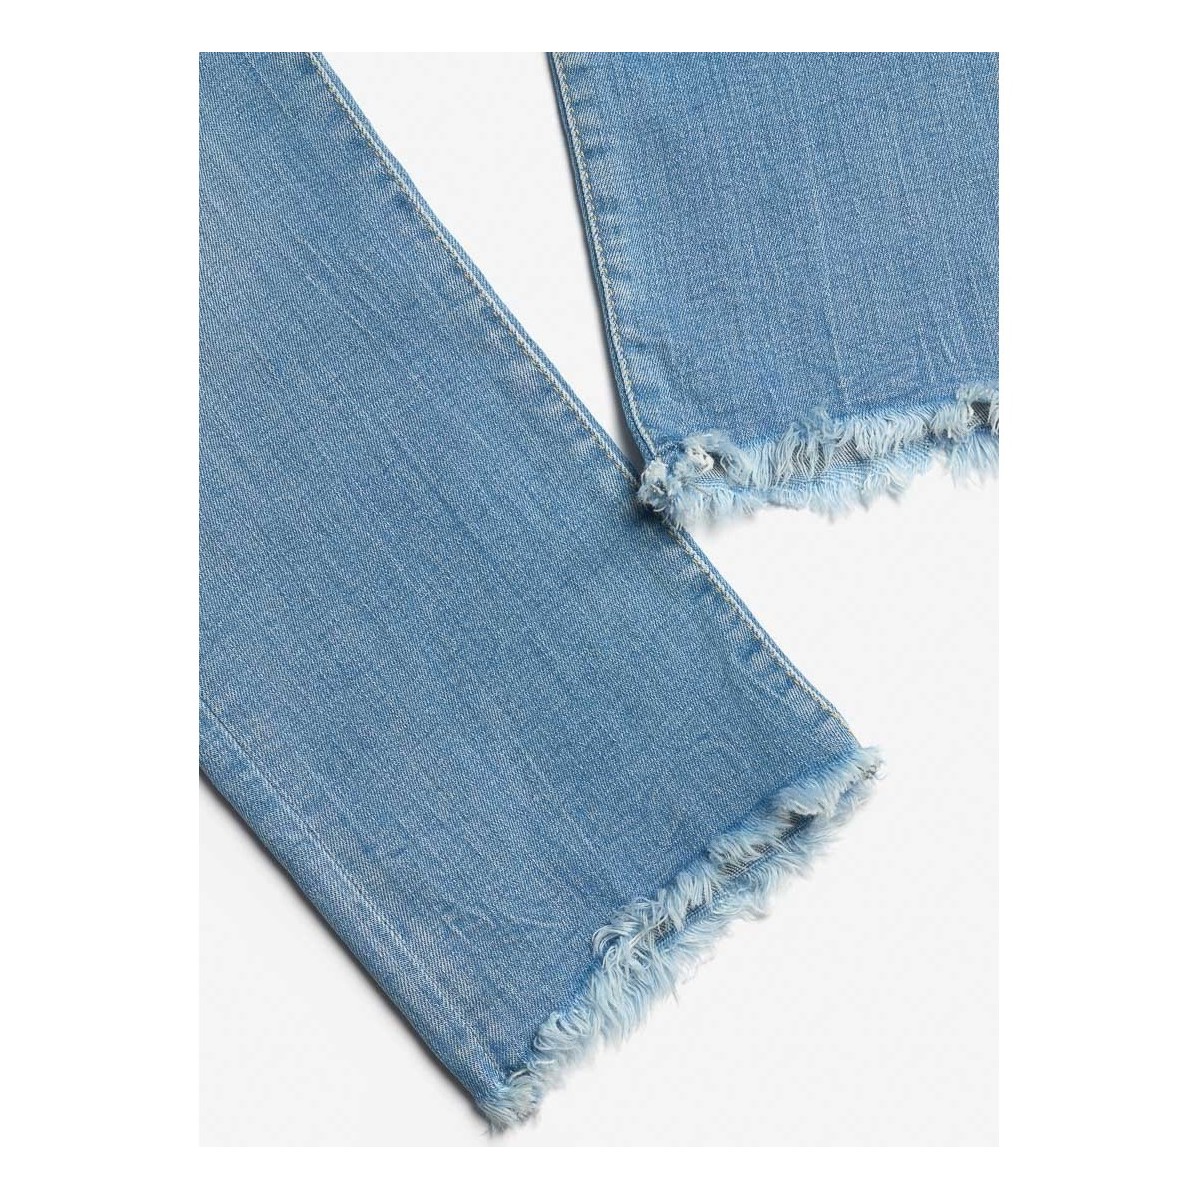 Le Temps des Cerises Bleu Precia 7/8ème jeans destroy bleu 0J3k3zgd